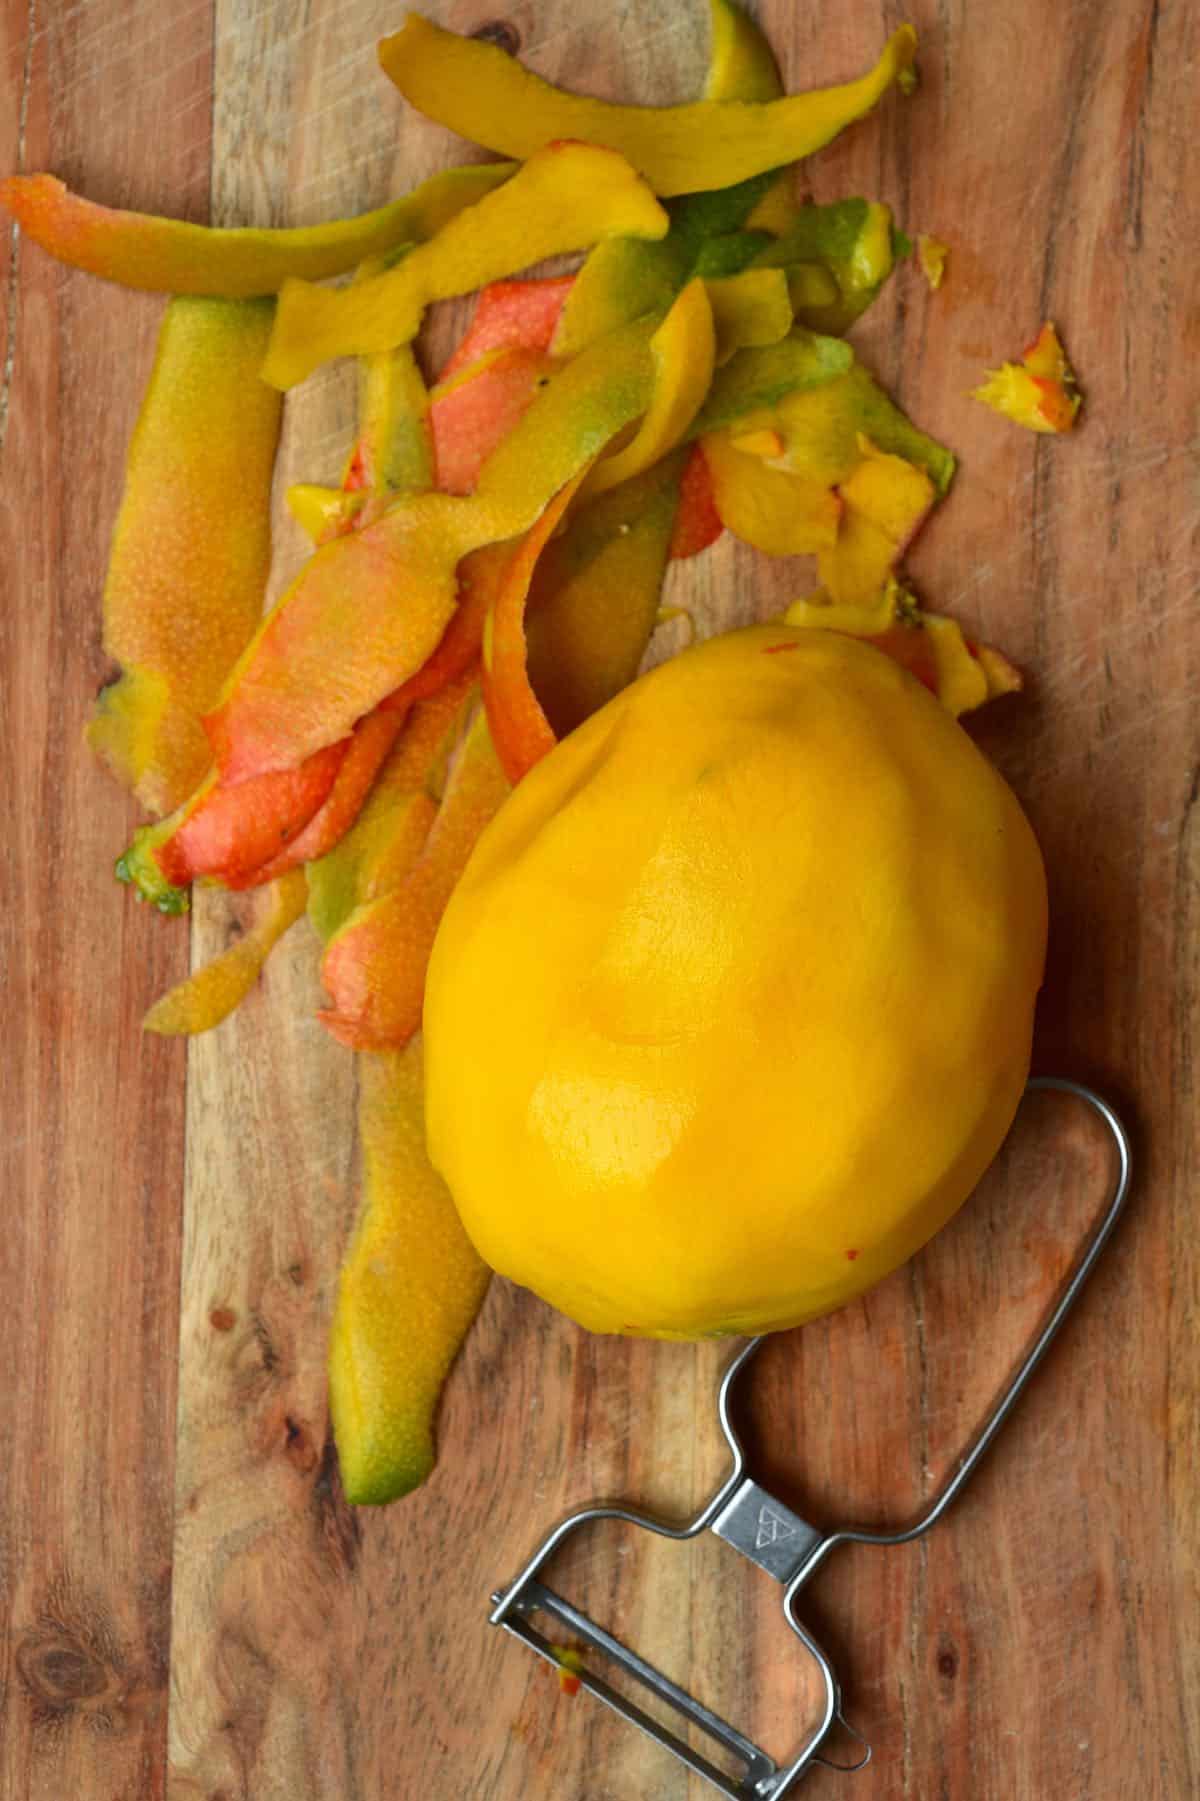 Peeled mango